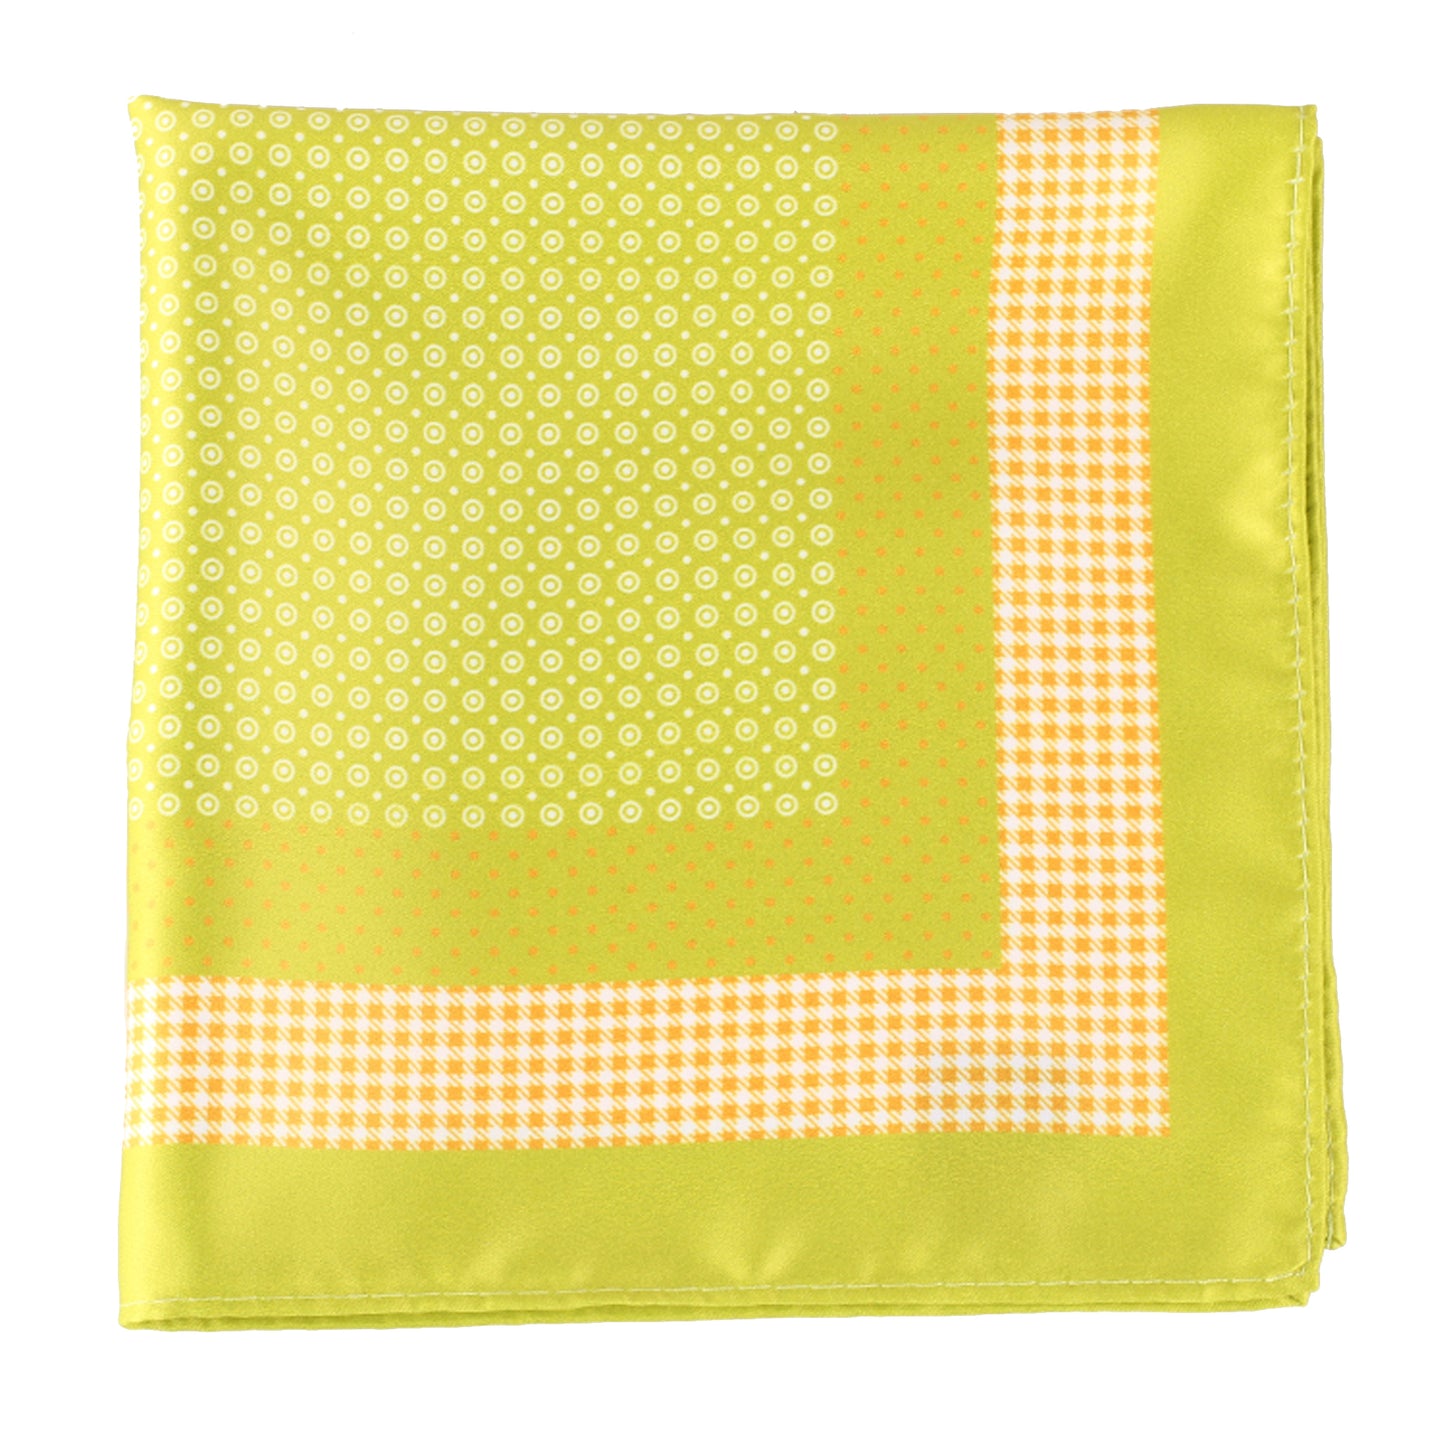 Lime Polka Dot Pocket Square + SquareGuard